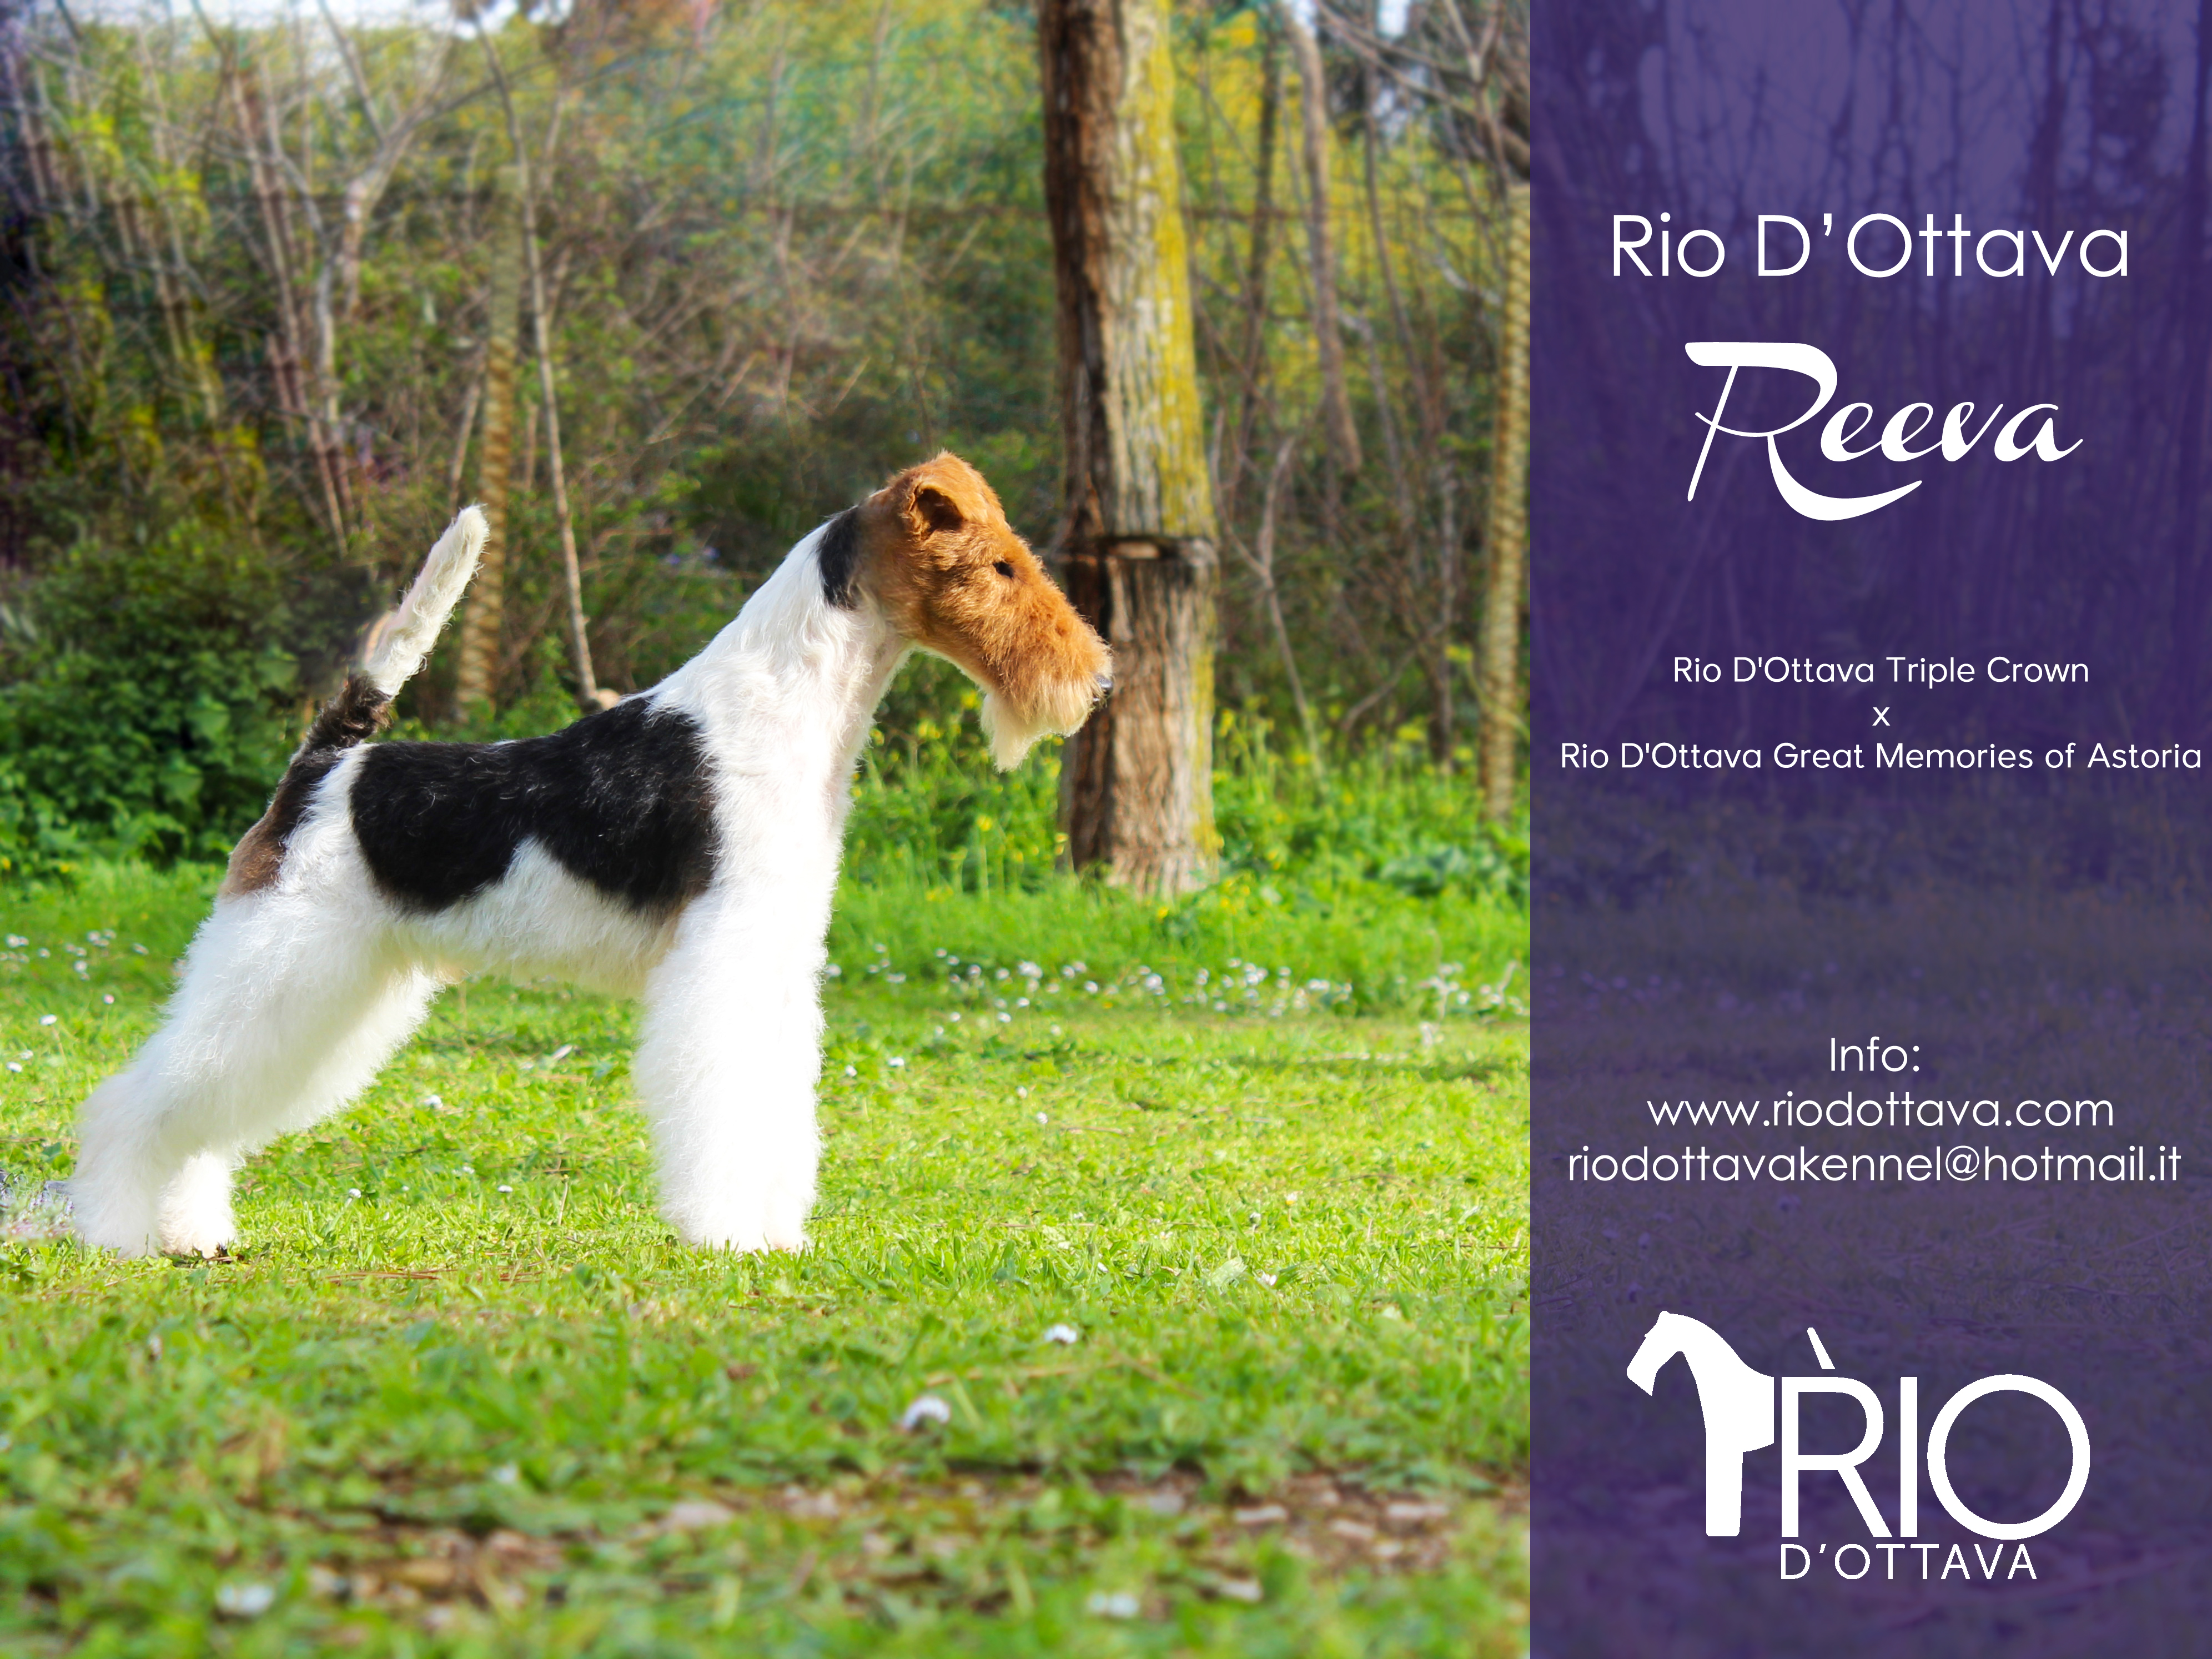 Rio d'Ottava Wire Fox Terriers by Andrea Murtula – Rio d'Ottava Reeva